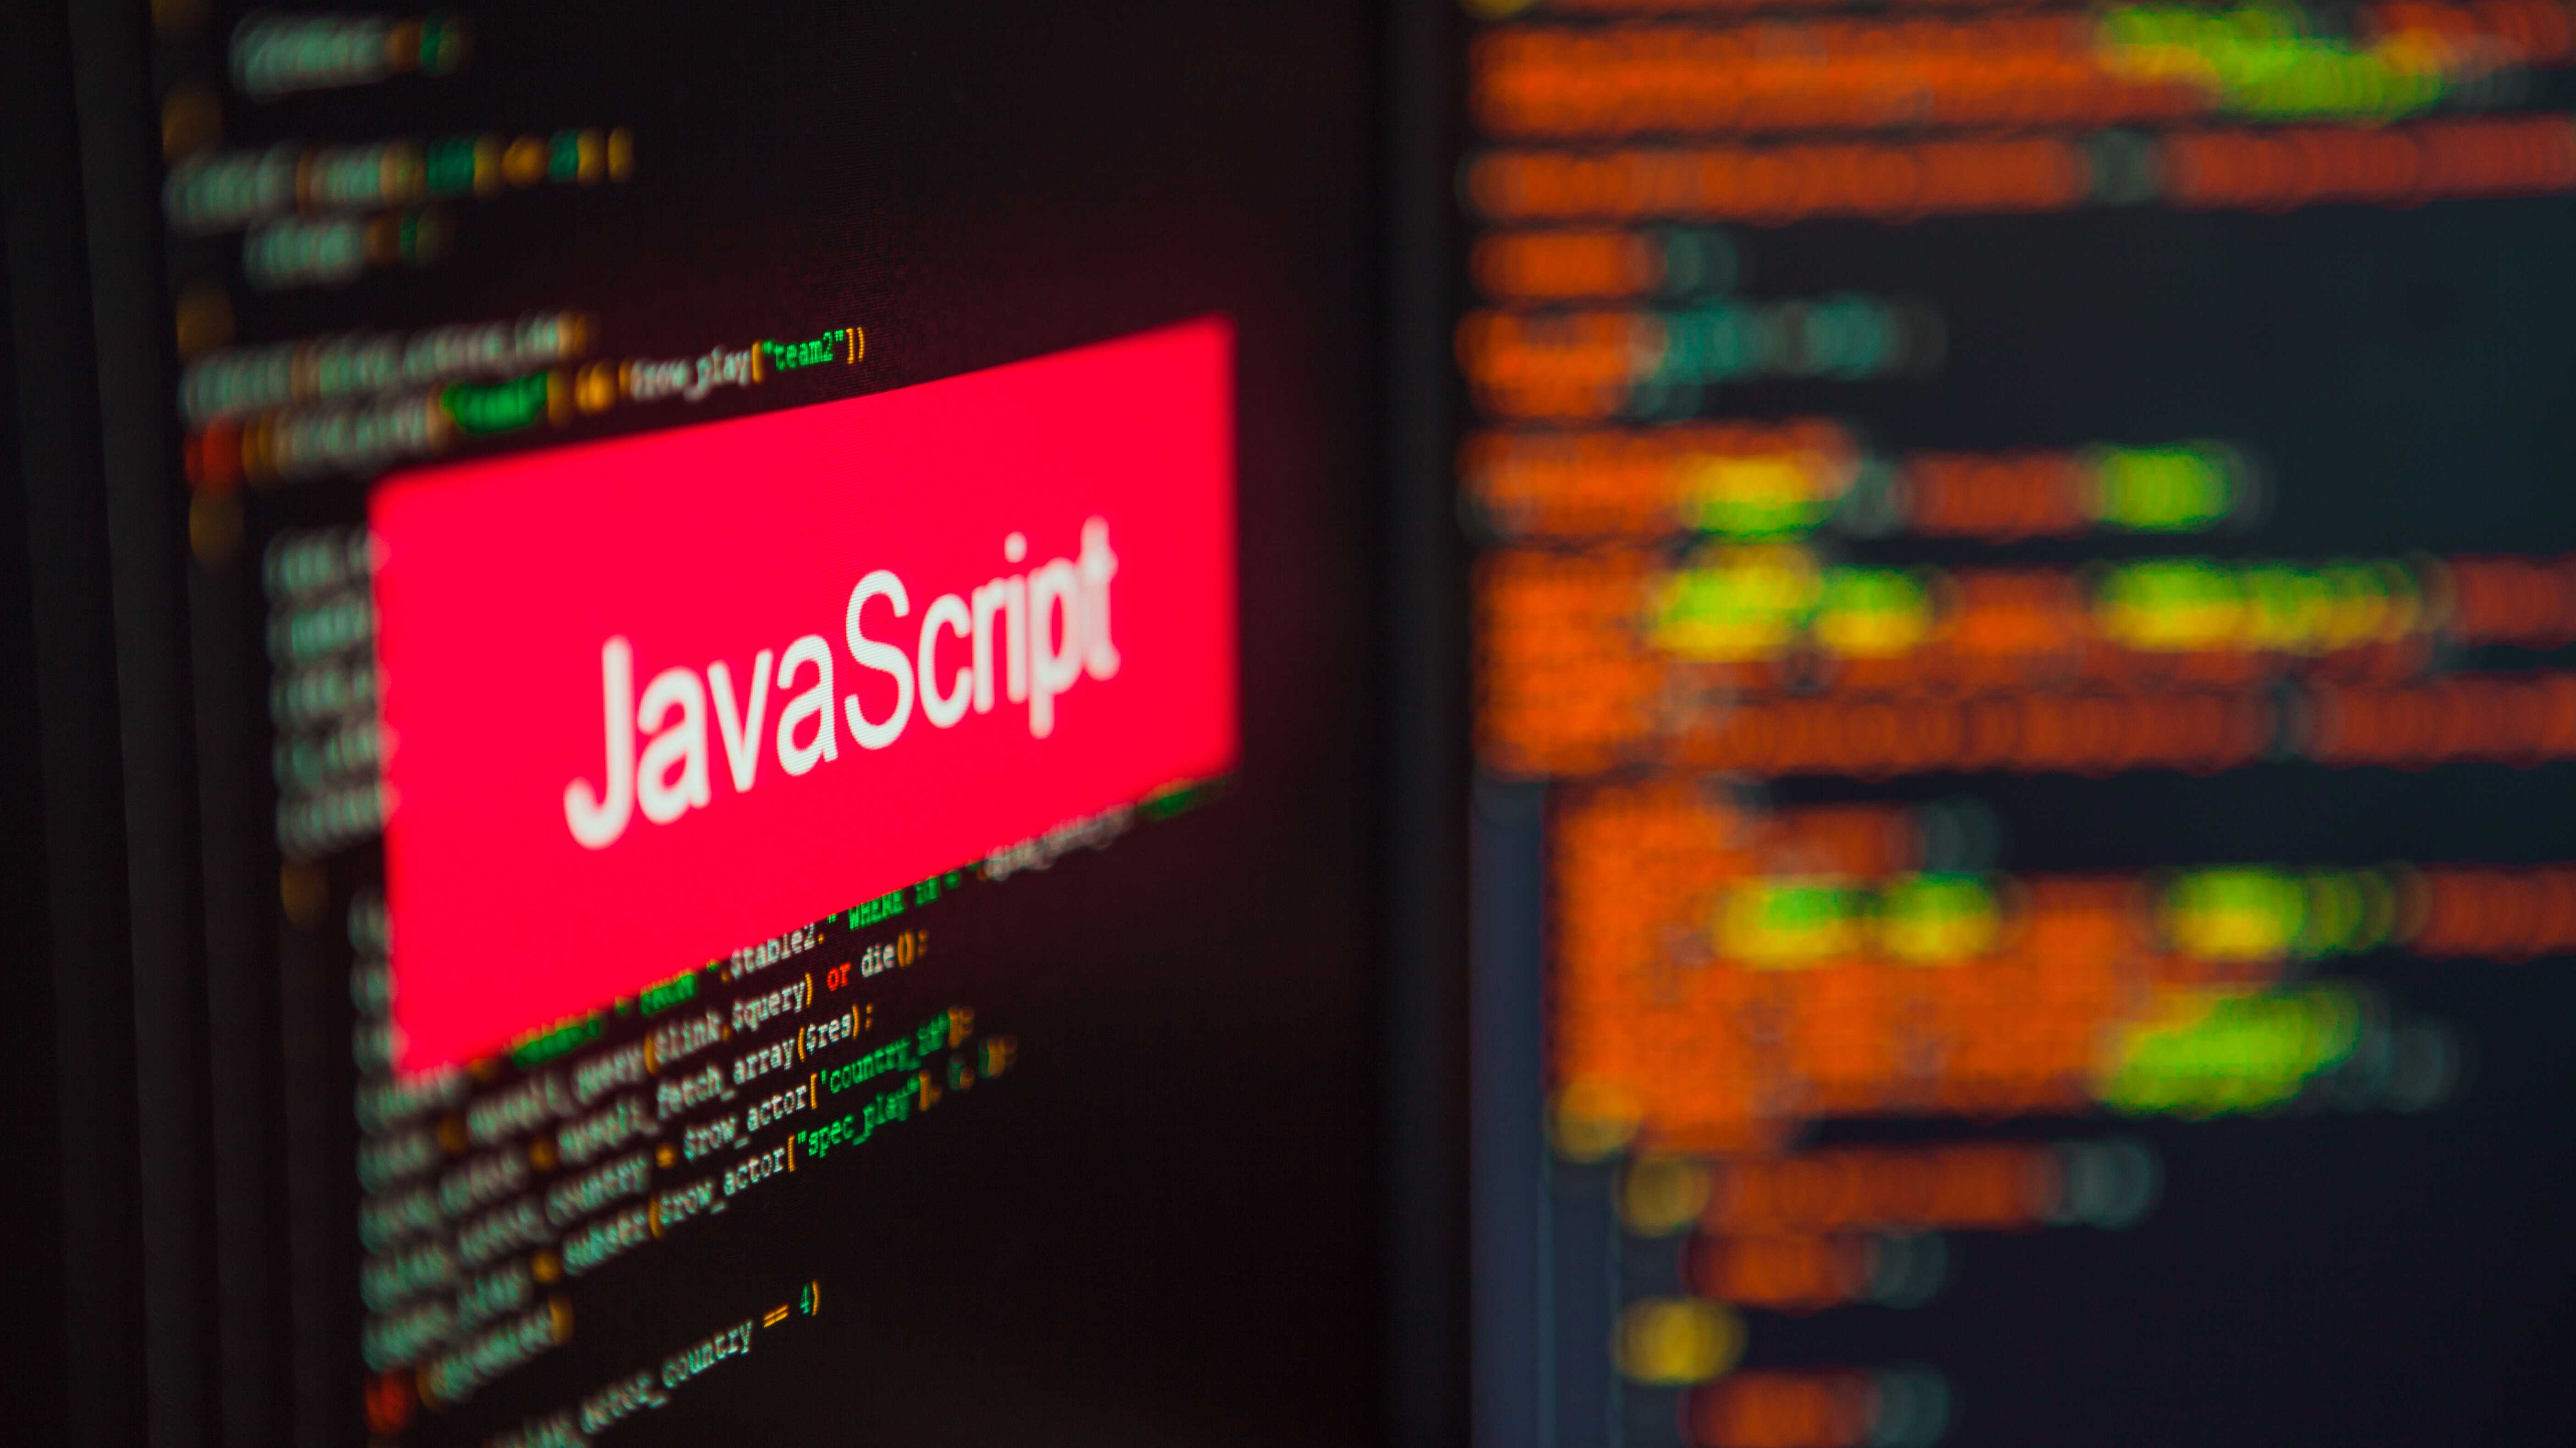 Ein Display mit verschwommenen Codezeilen, über denen ein roter Balken mit dem Schriftzug "Javascript" liegt.